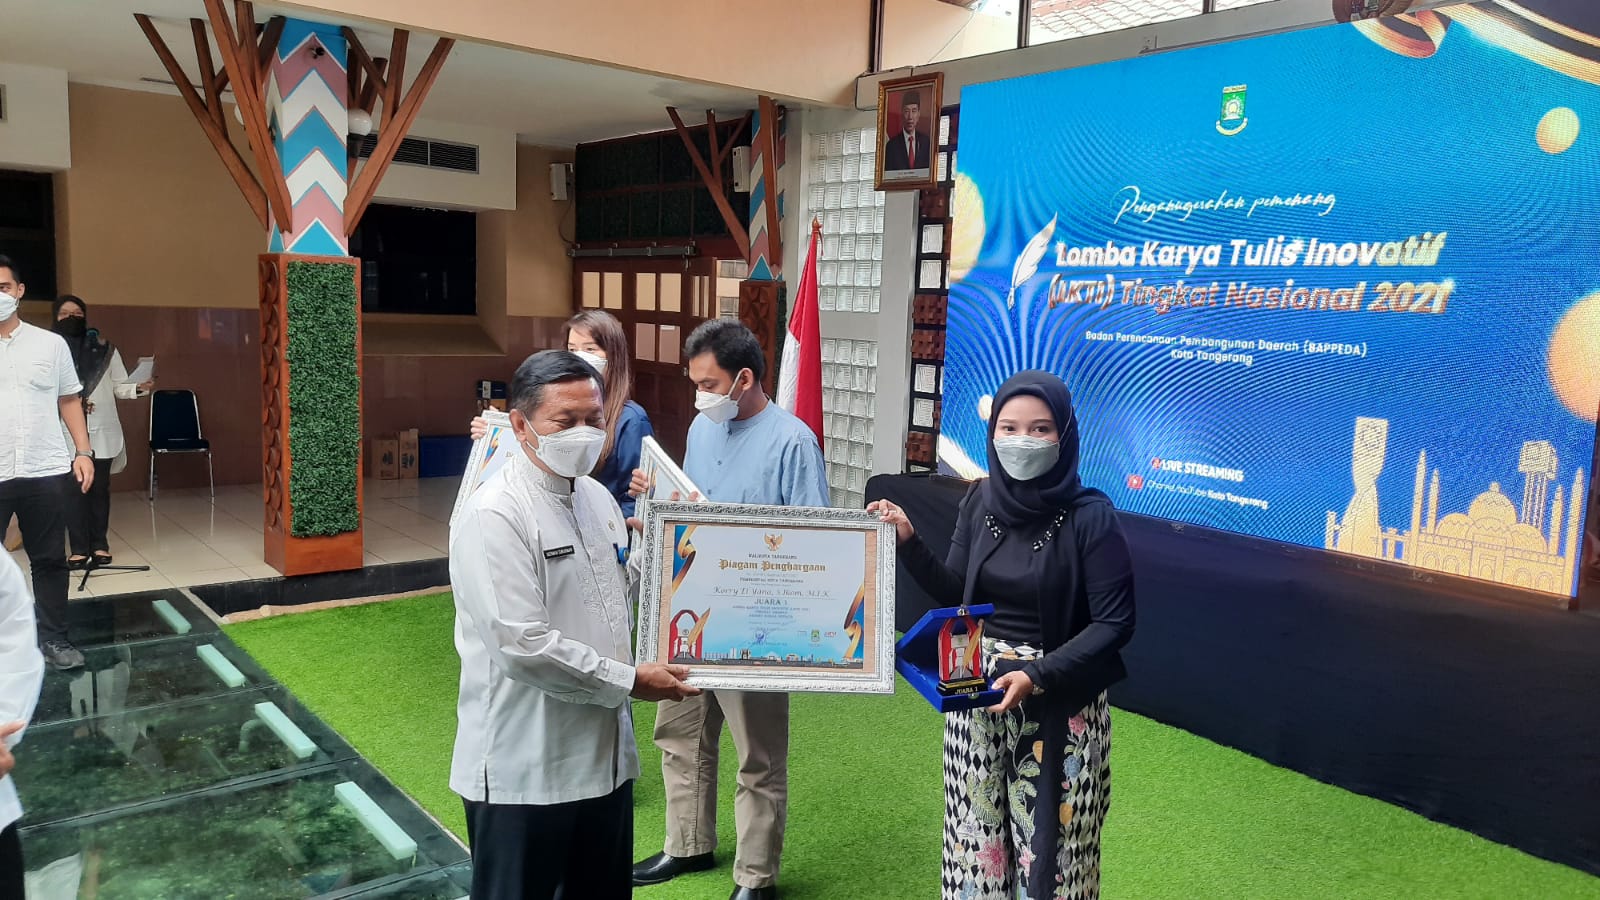 Sebanyak tujuh dosen Universitas Muhammadiyah Tangerang (UMT) meraih gelar juara dalam penyelenggaraan Lomba Karya Tulis Inovatif (LKTI) tingkat nasional tahun 2021.